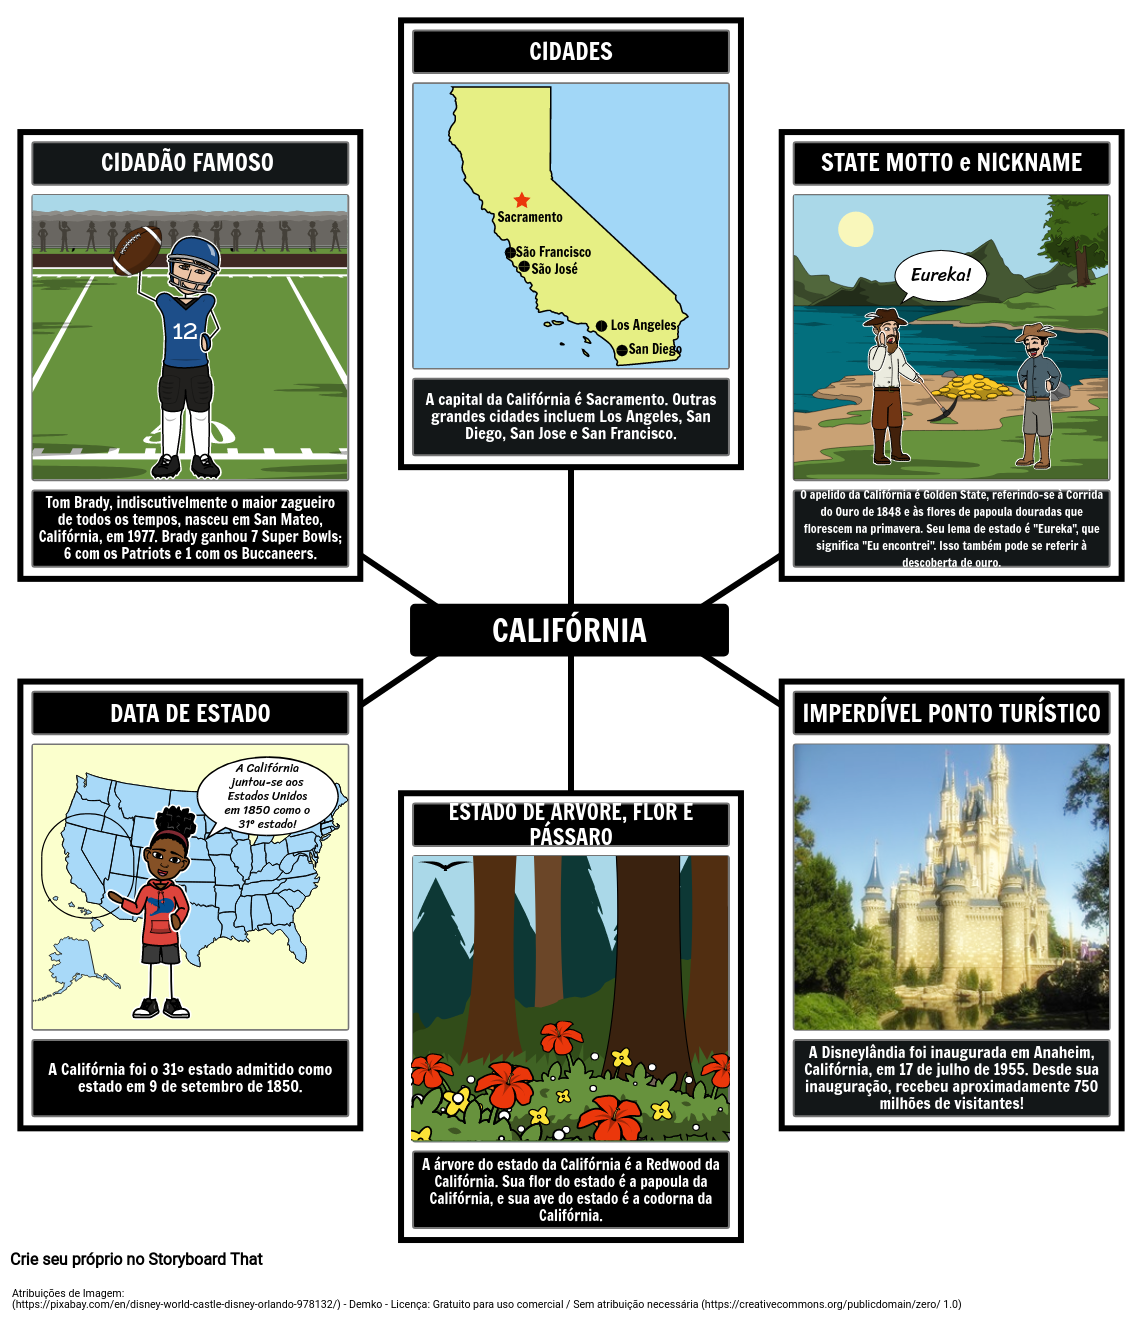 Califórnia: Perfil do Estado